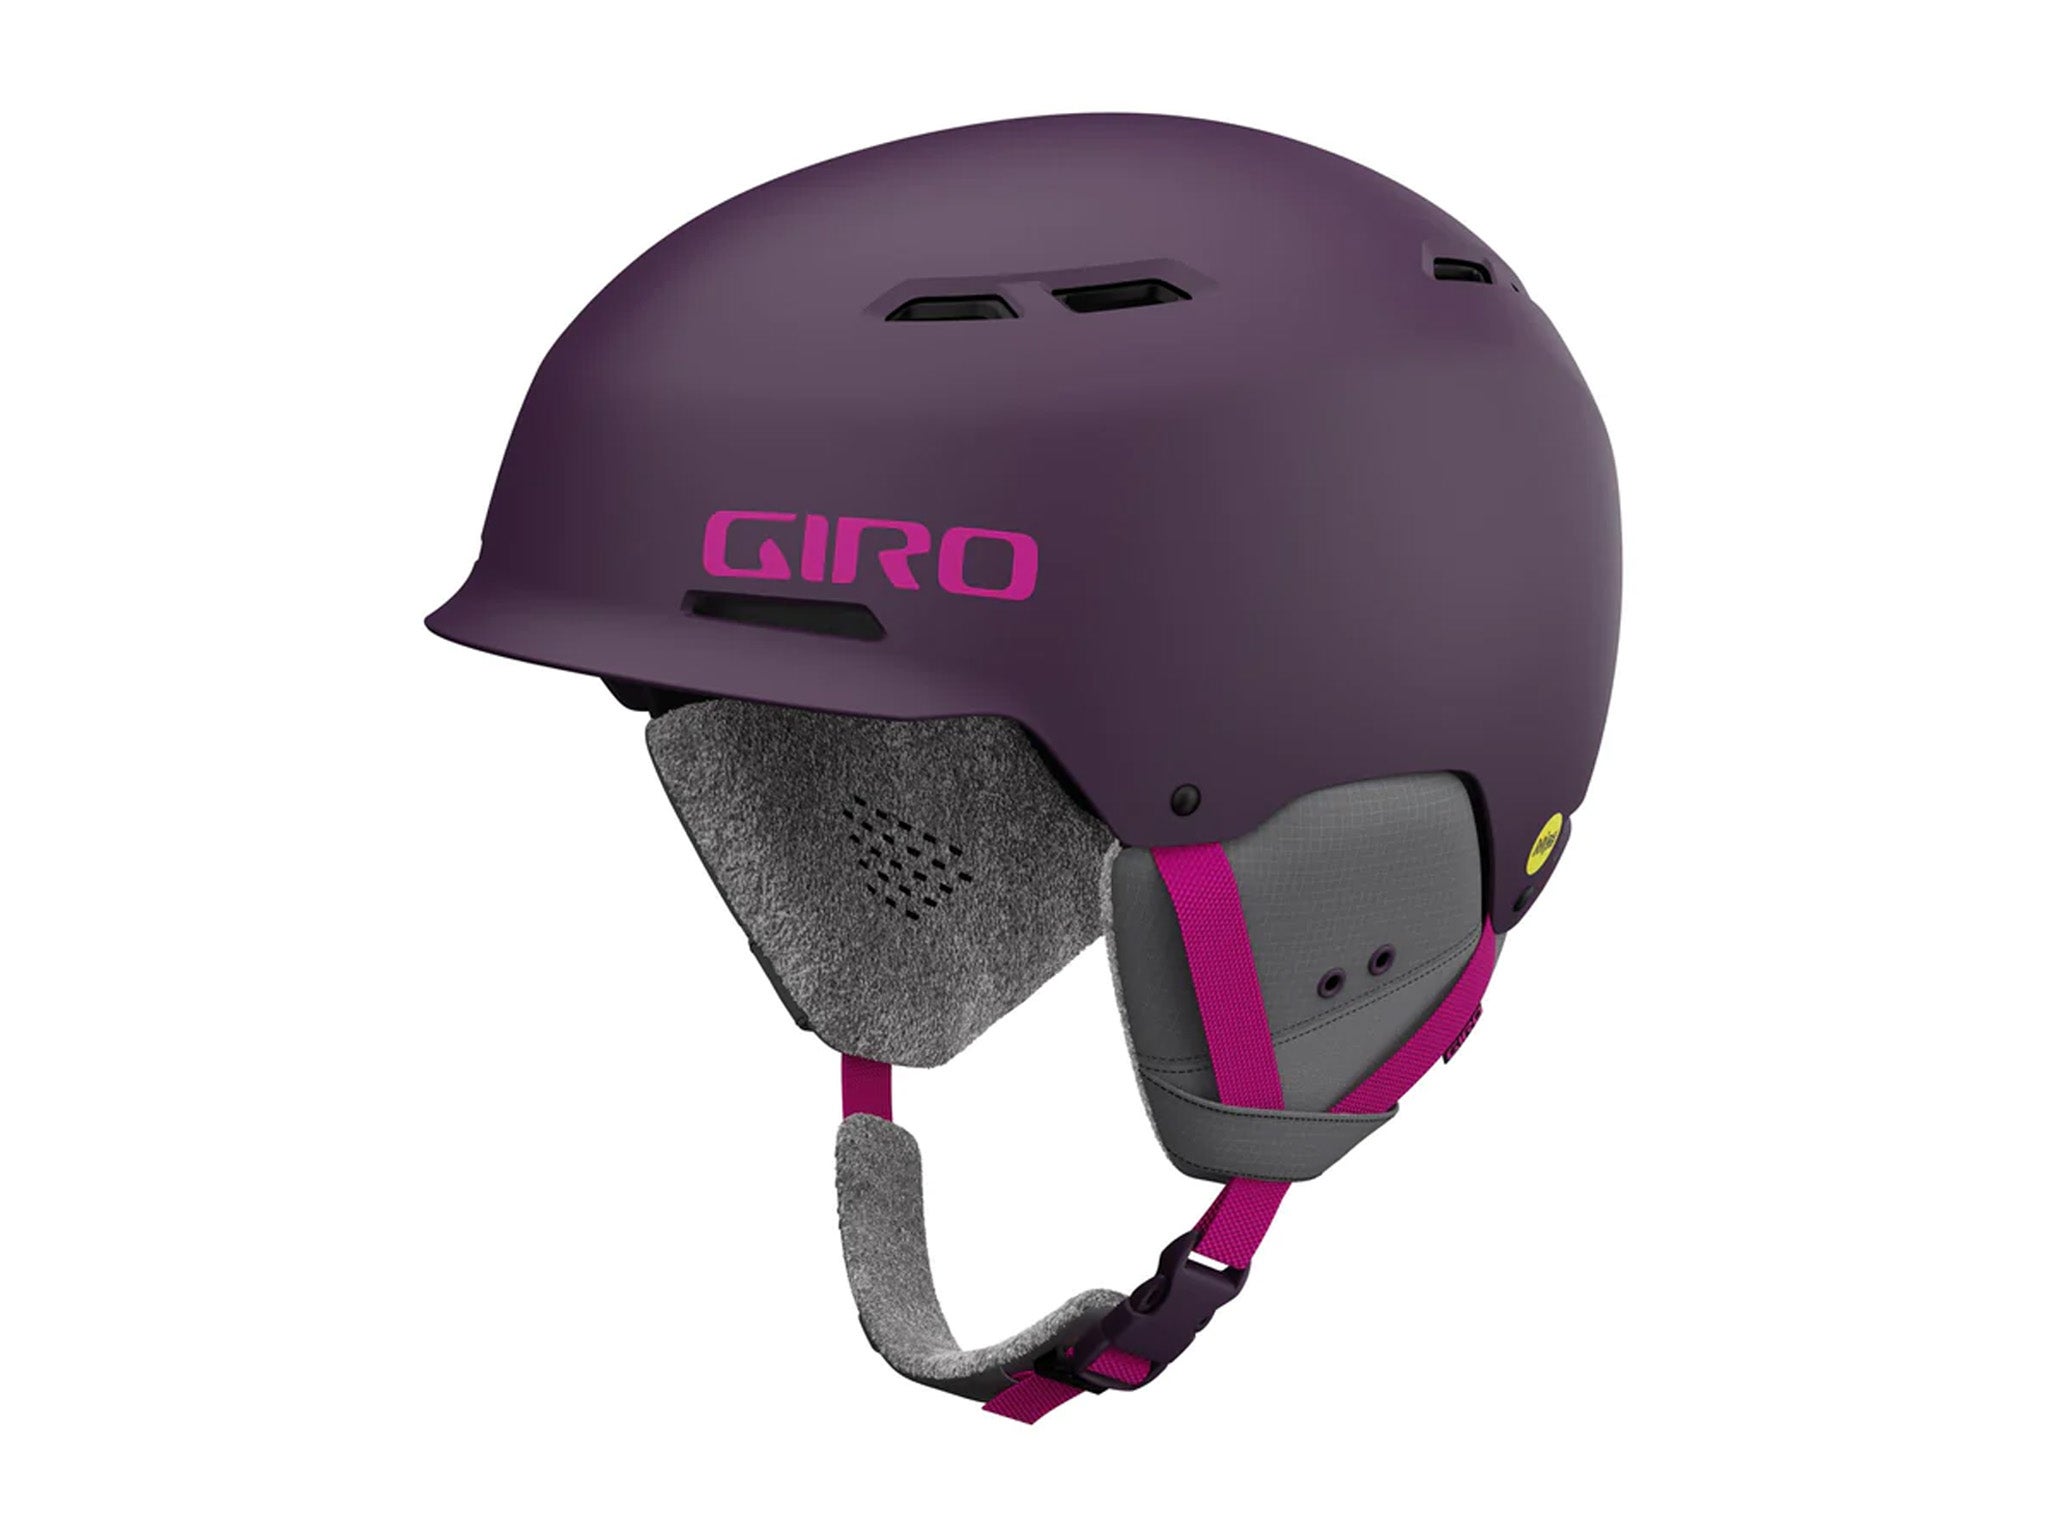 Giro-helmet-Indybest-review